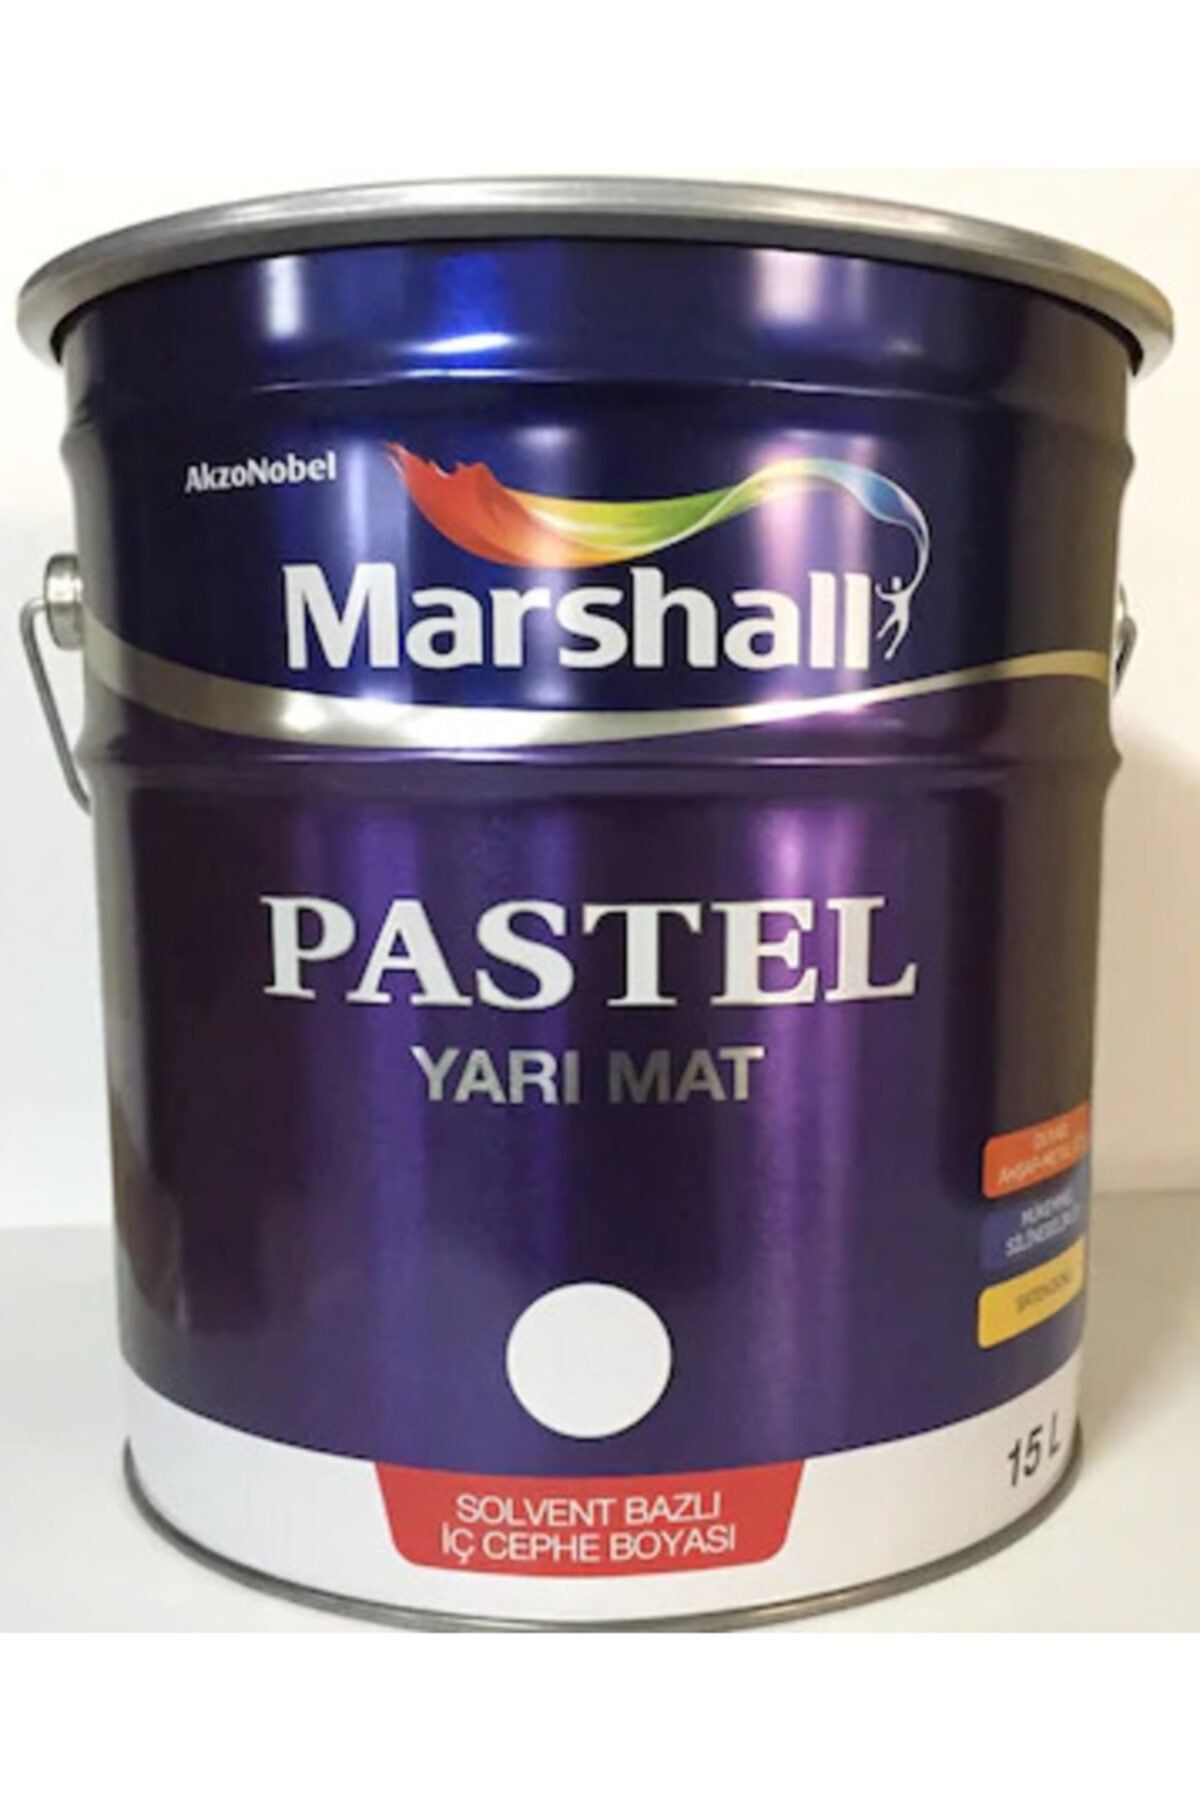 Marshall Pastel Yarımat Duvar-ahşap-metal Boyası 15 Lt Beyaz